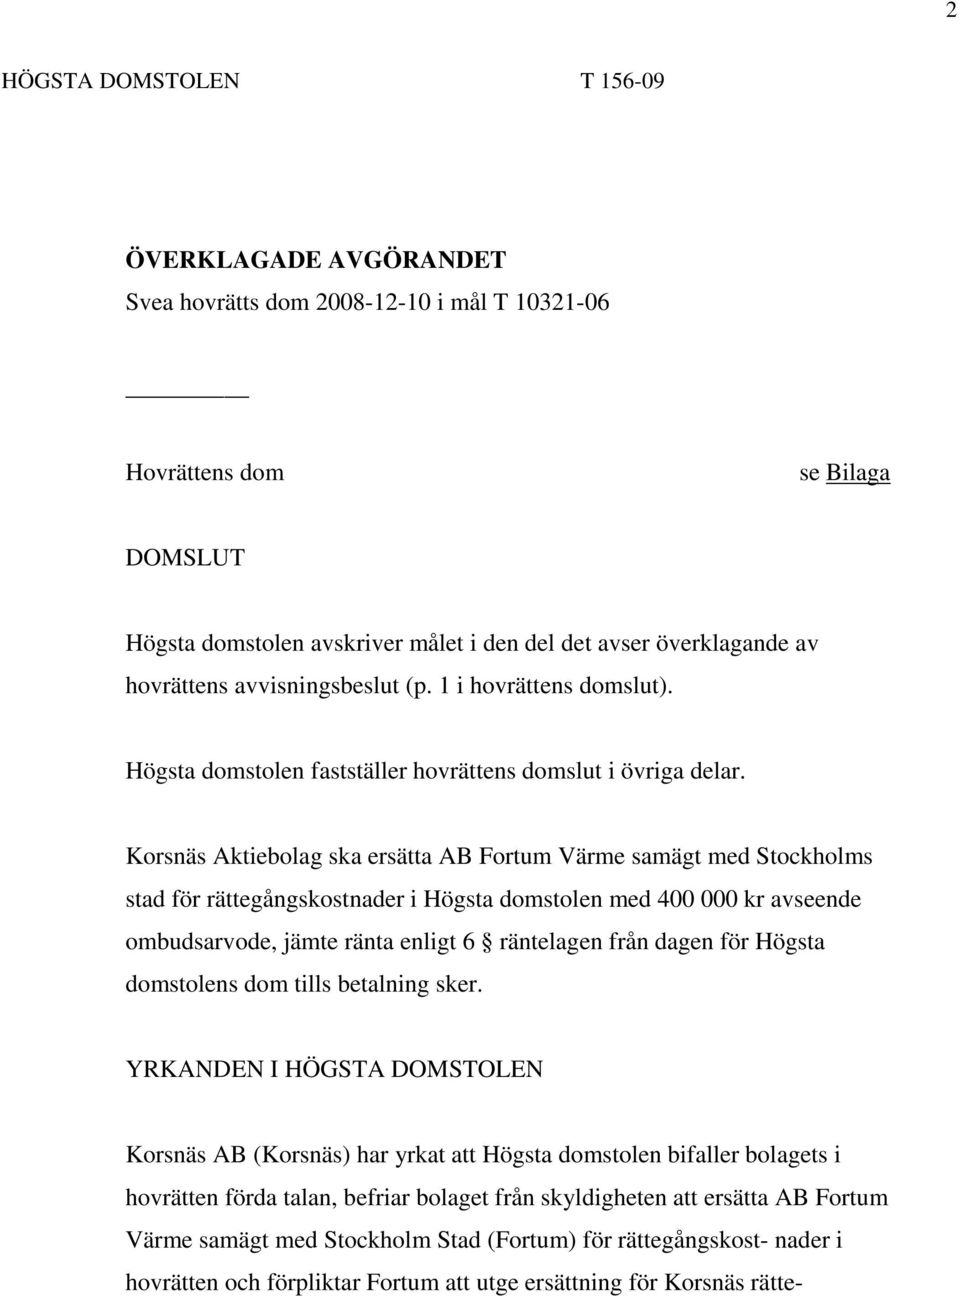 Korsnäs Aktiebolag ska ersätta AB Fortum Värme samägt med Stockholms stad för rättegångskostnader i Högsta domstolen med 400 000 kr avseende ombudsarvode, jämte ränta enligt 6 räntelagen från dagen